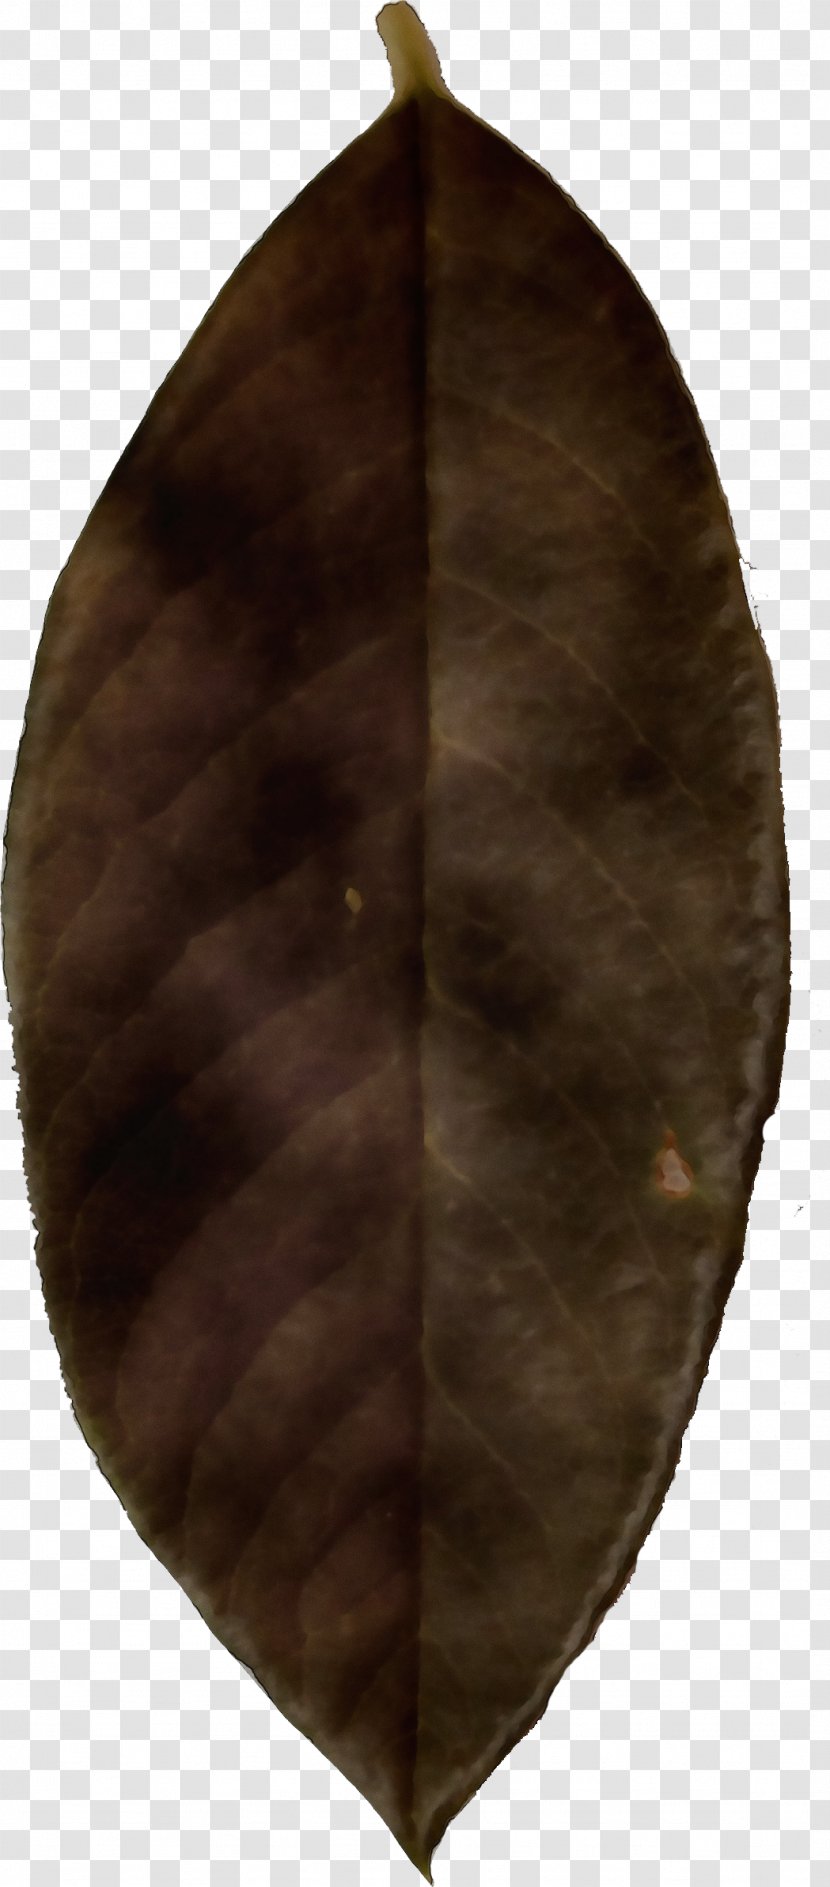 Leaf Cartoon - Brown Transparent PNG